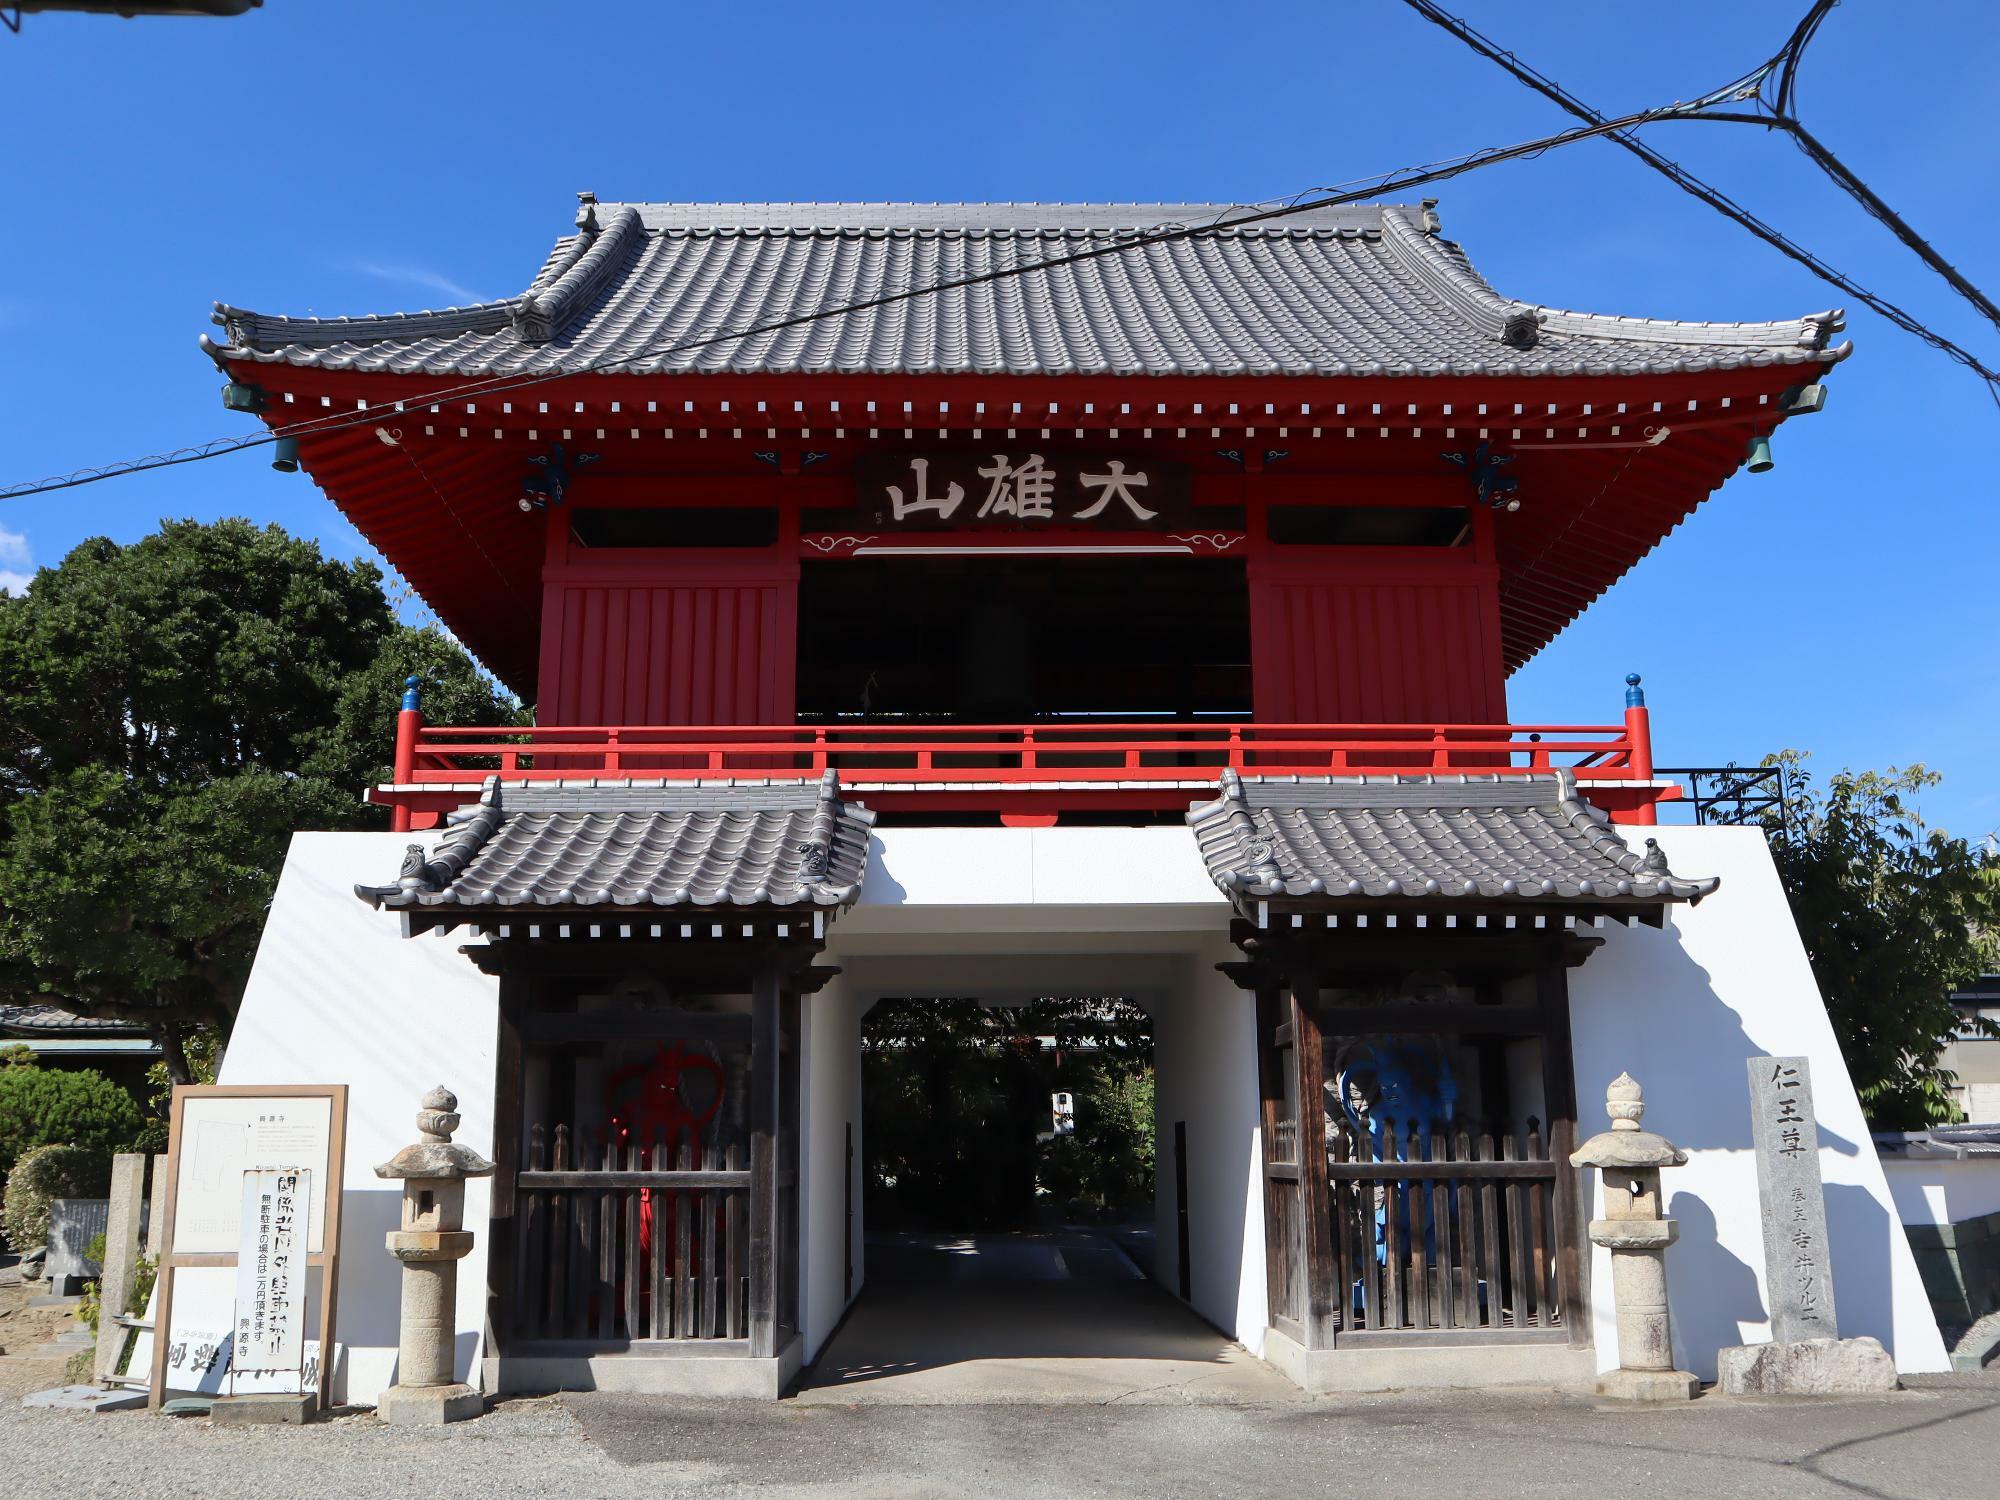 徳島市下助任町にある興源寺。※写真は過去のものです。